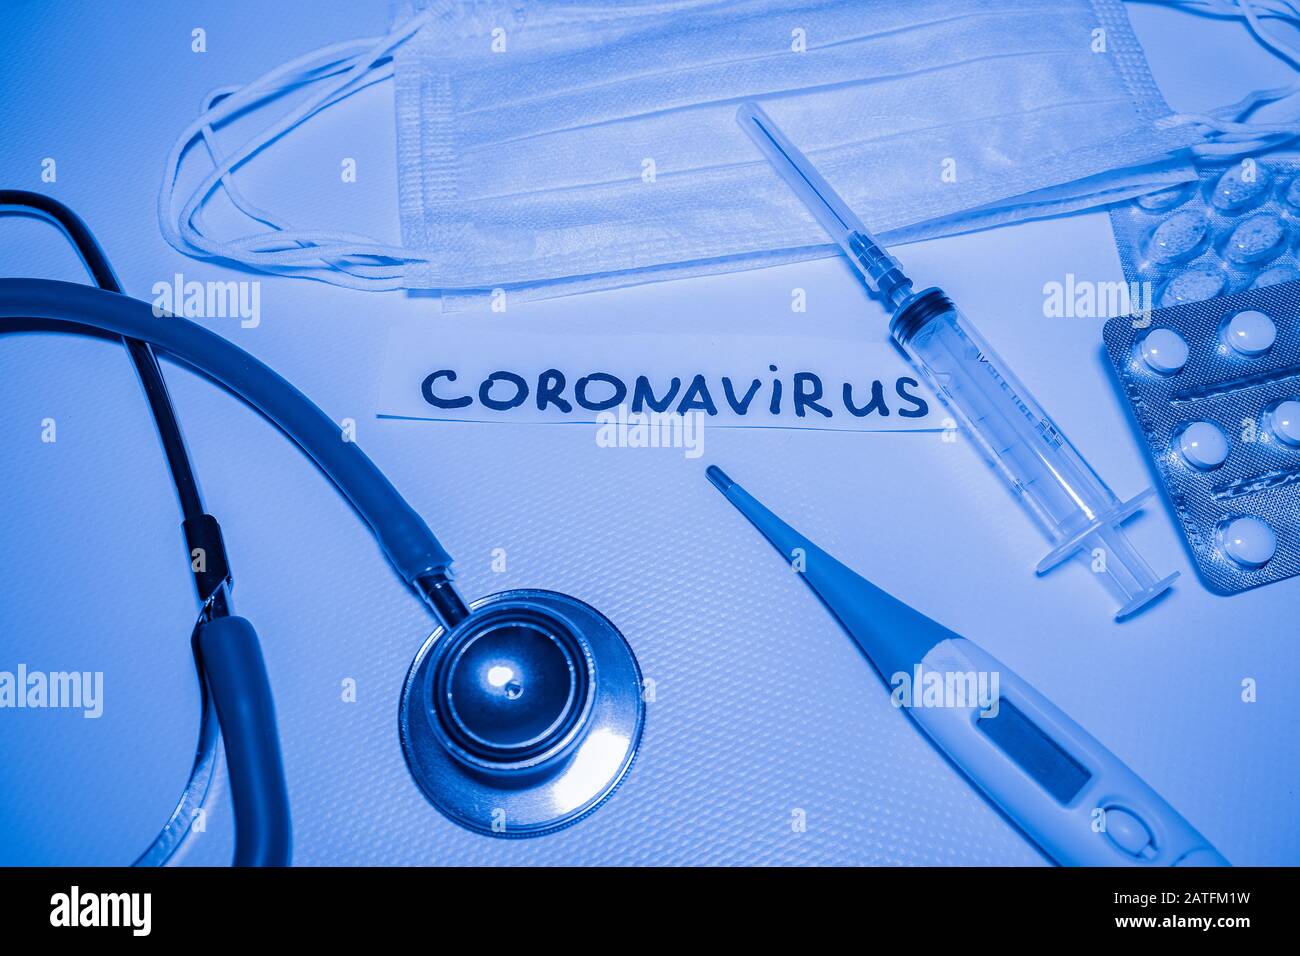 Medizinischer blauer Hintergrund mit Aufschrift Coronavirus, Stethoskop, Pillen, Thermometer, Spritze Stockfoto